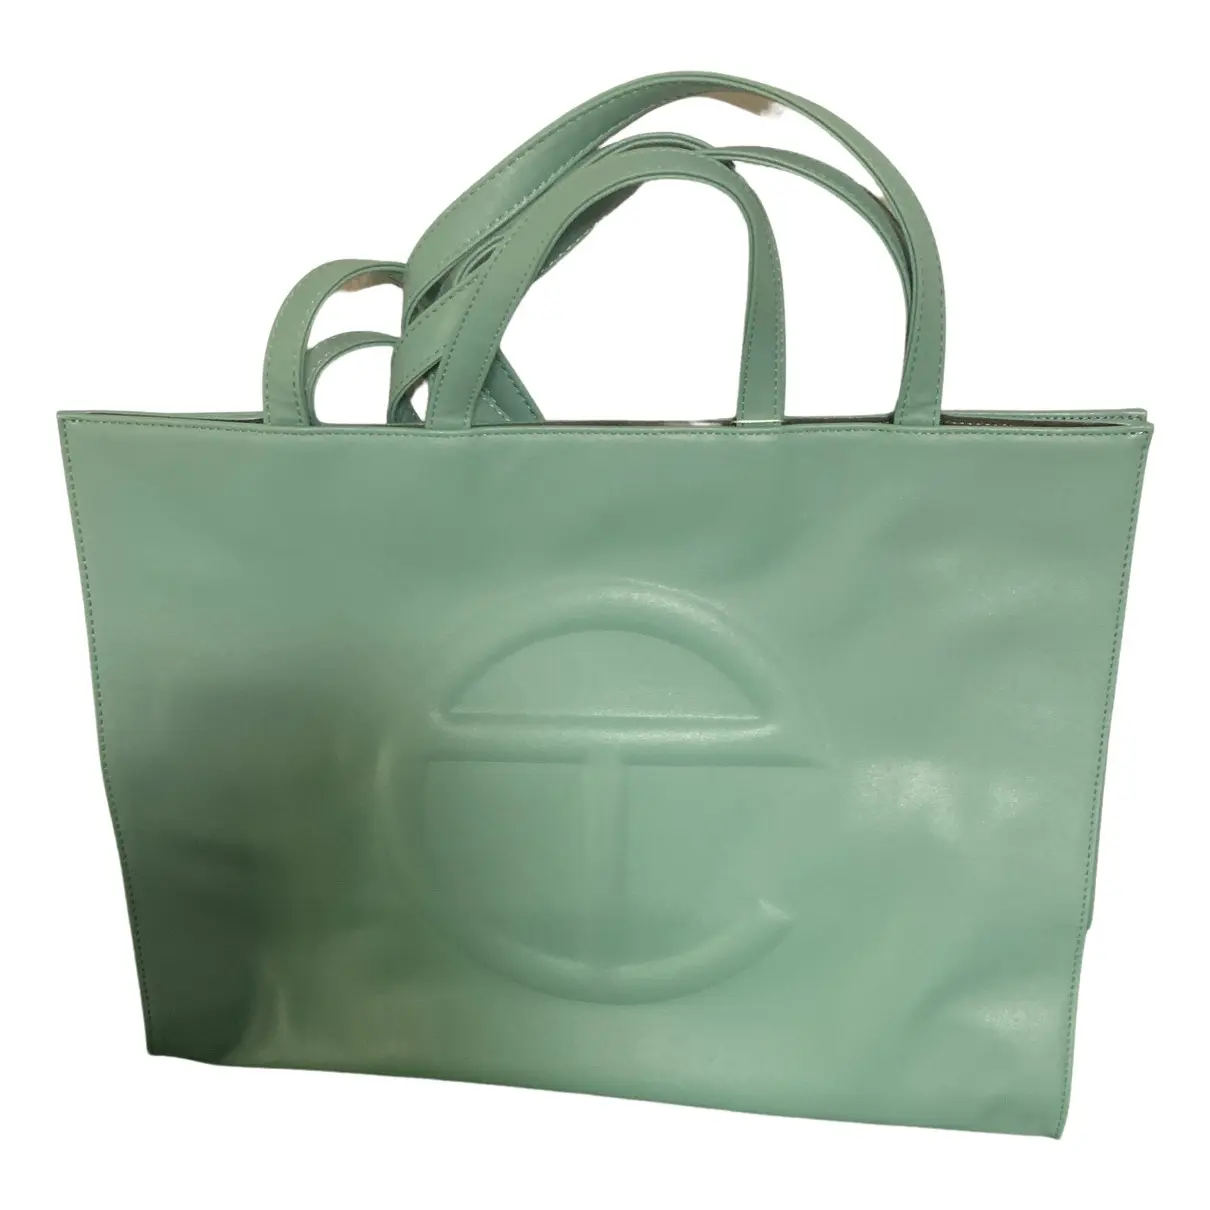 Large Shopping Bag vegan leather handbag Telfar